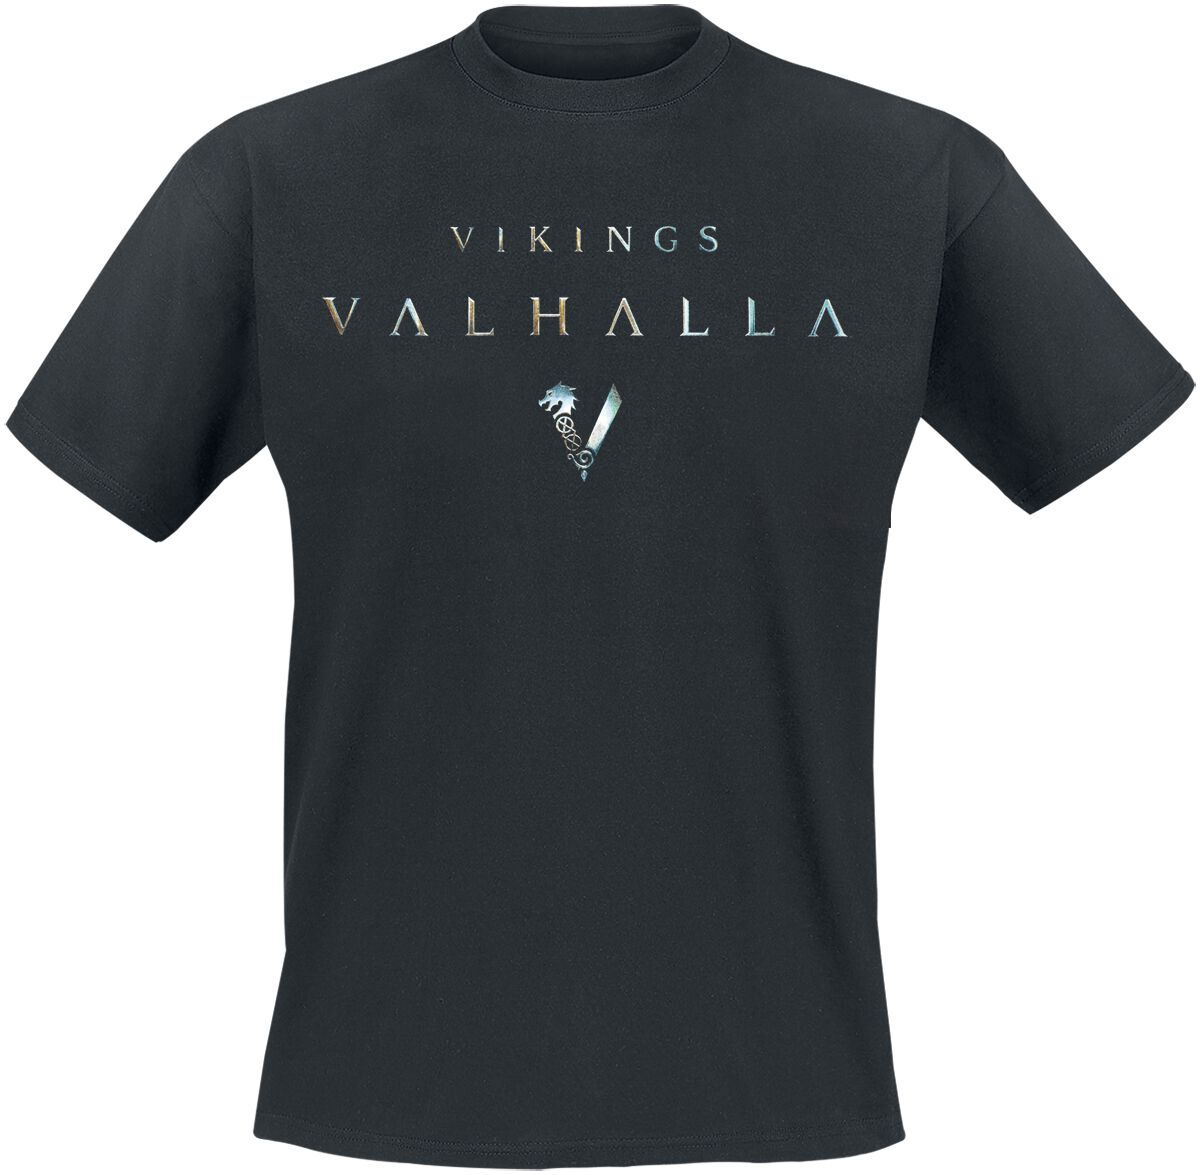 Vikings Vikings - Valhalla Metallic T-Shirt schwarz in M